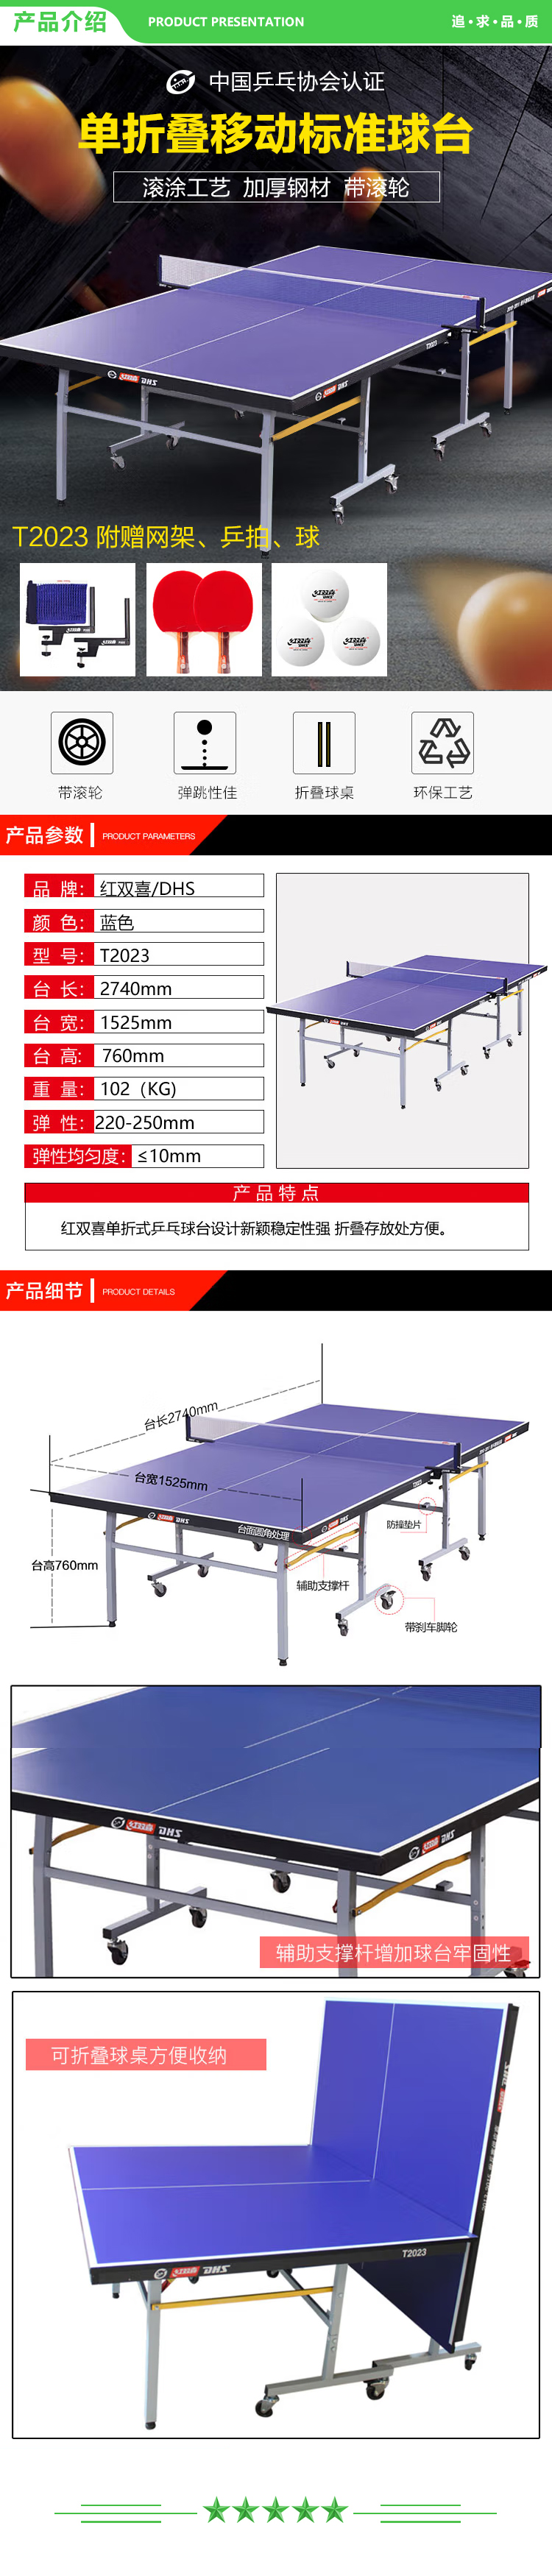 红双喜 DHS DXBC007-1(T2023) 乒乓球桌室内乒乓球台单折式训练比赛用乒乓球案子 附网架-球拍-乒乓球  (2).jpg